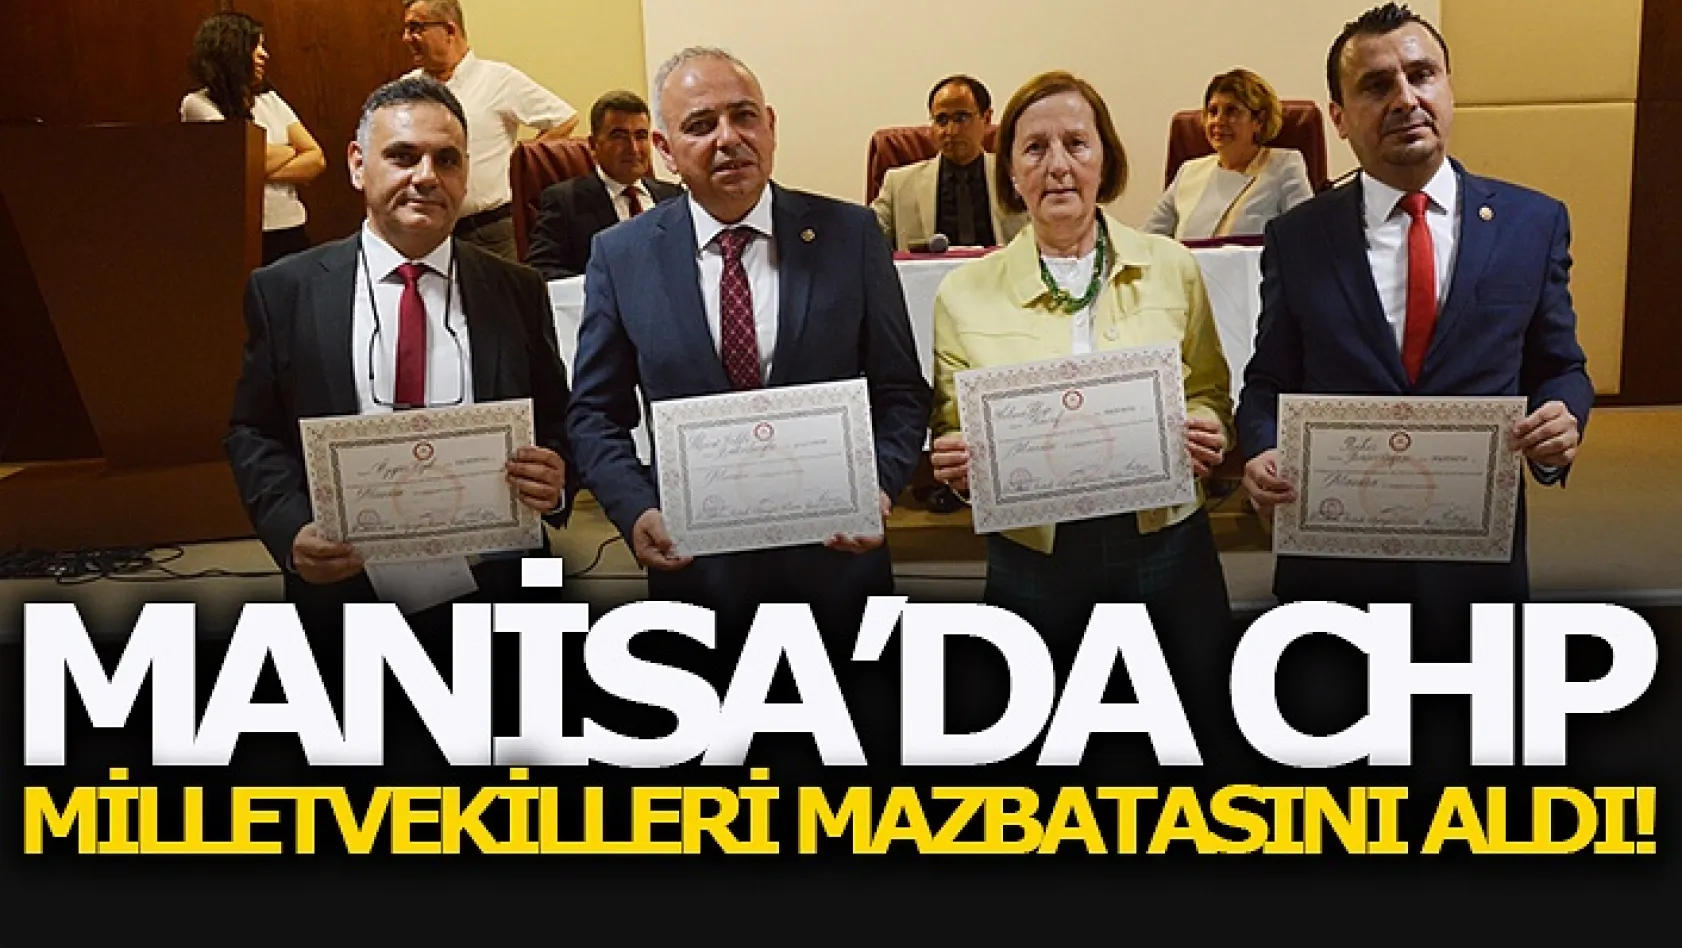 Manisa'da CHP Milletvekilleri Mazbatasını Aldı!